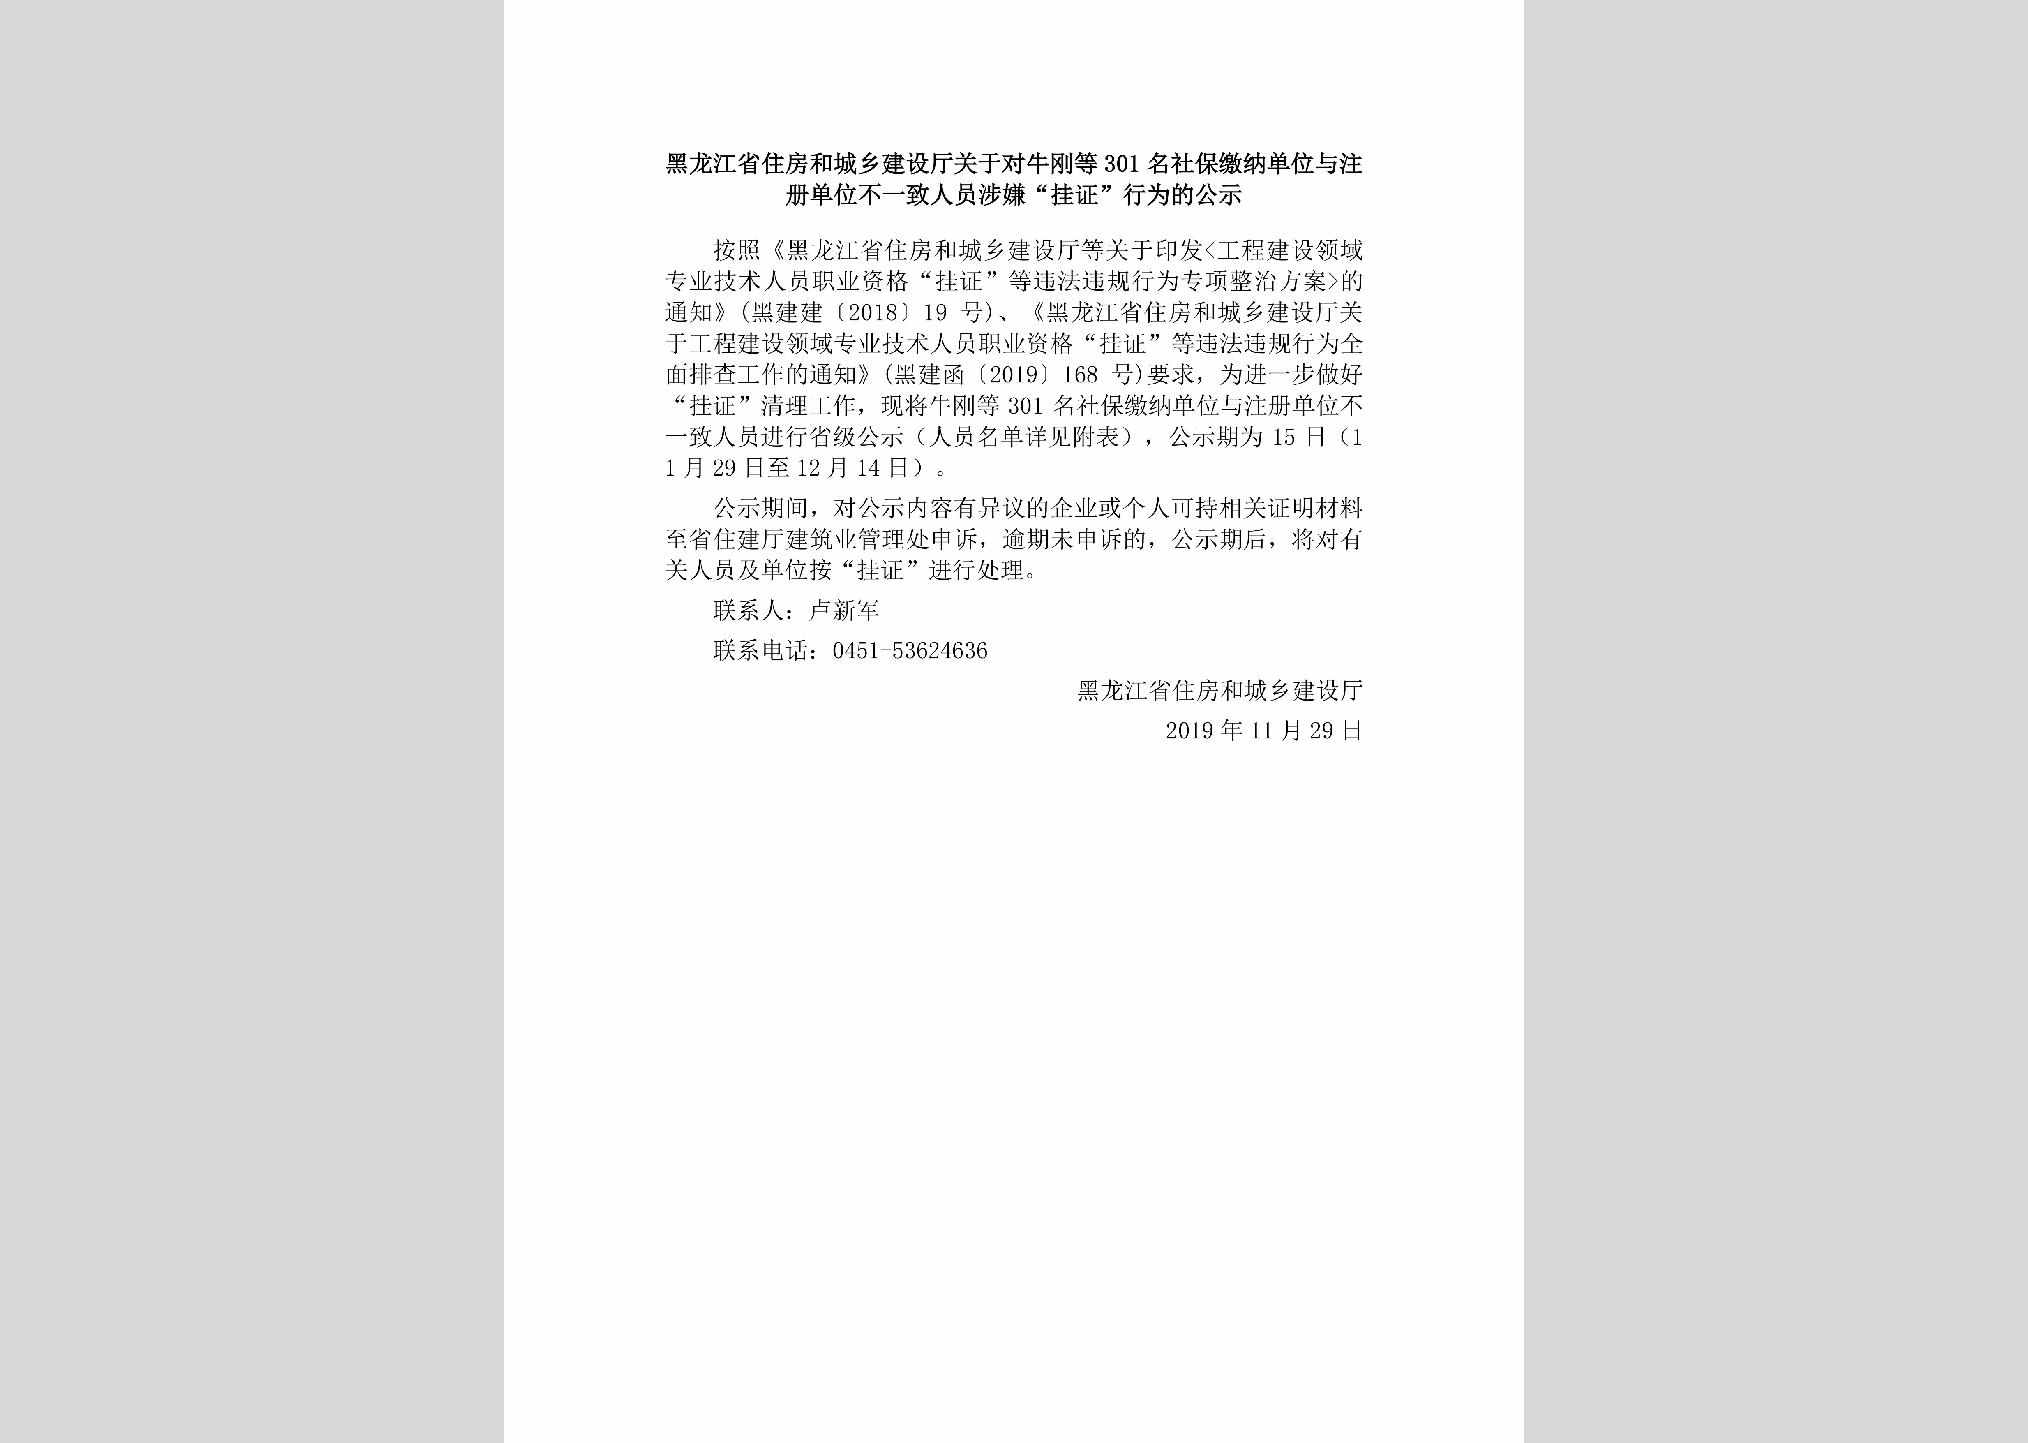 HLJ-YZCDWBYZ-2019：黑龙江省住房和城乡建设厅关于对牛刚等301名社保缴纳单位与注册单位不一致人员涉嫌“挂证”行为的公示